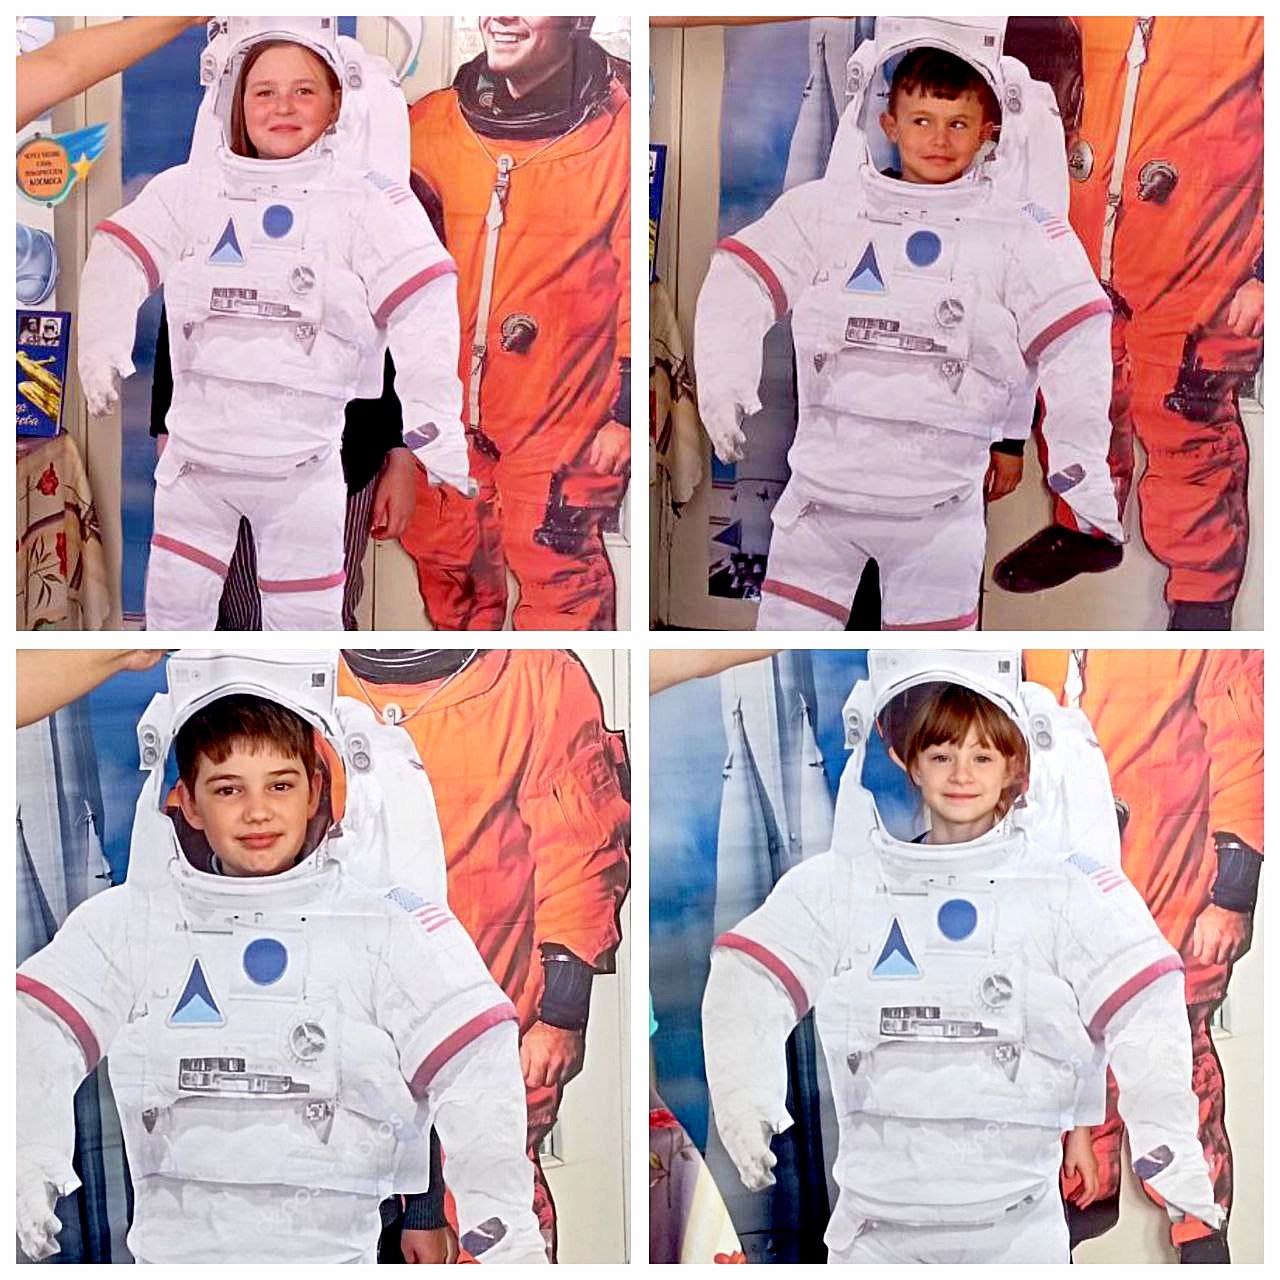 Сотрудники детской муниципальной библиотеки пригласили ребят на час интересных сообщений «Штурманы космических дорог»